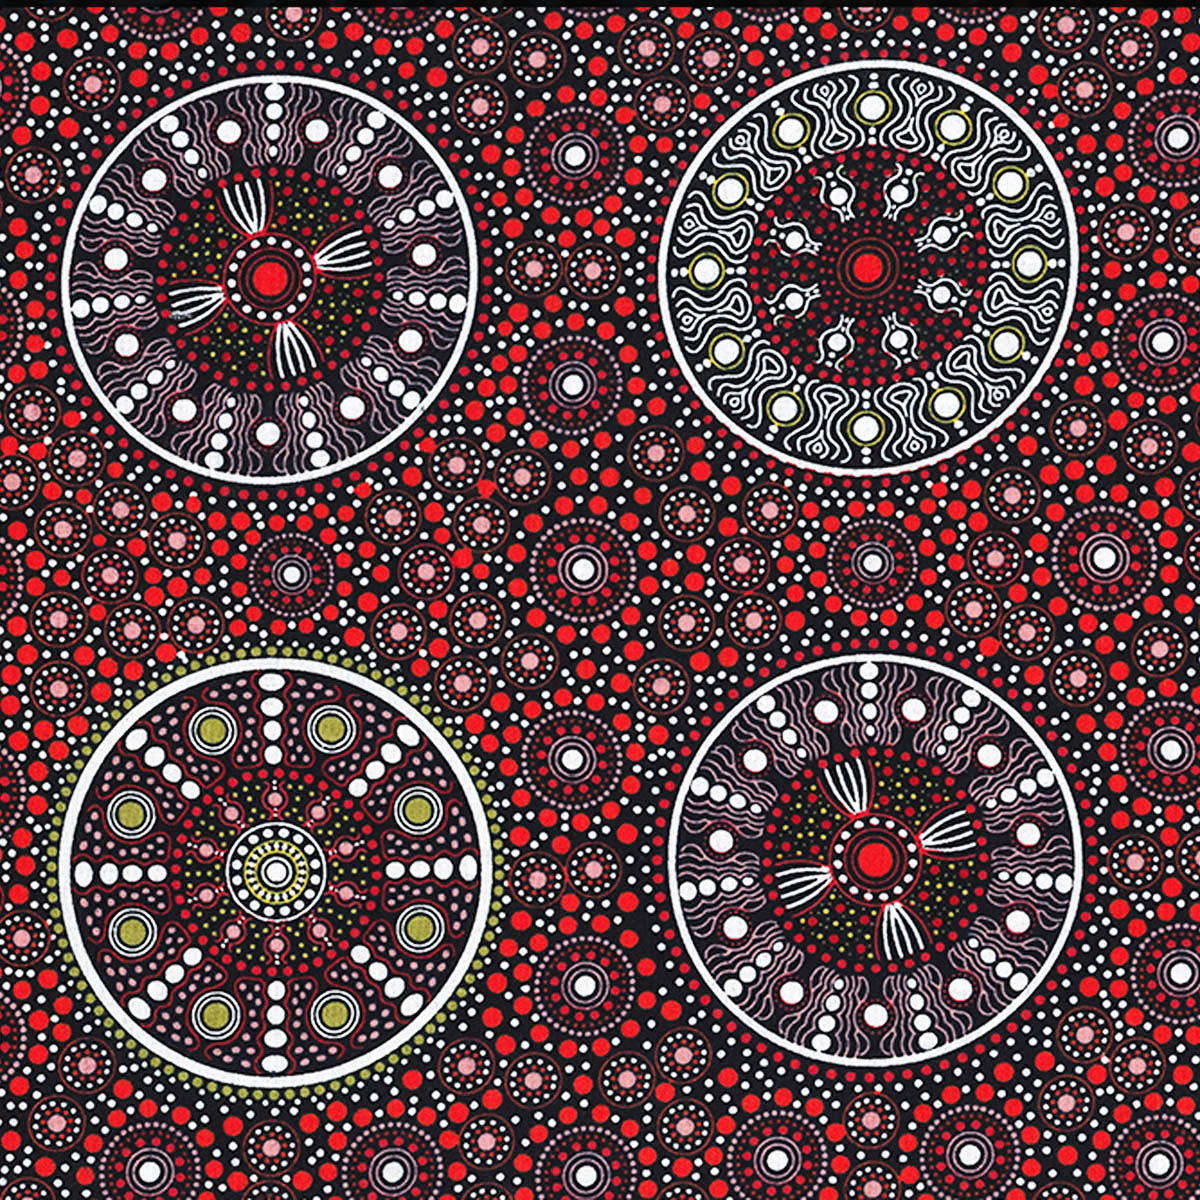 WILDFLOWERS AFTER RAIN RED by Aboriginal Artist LETISHA DOOLAN